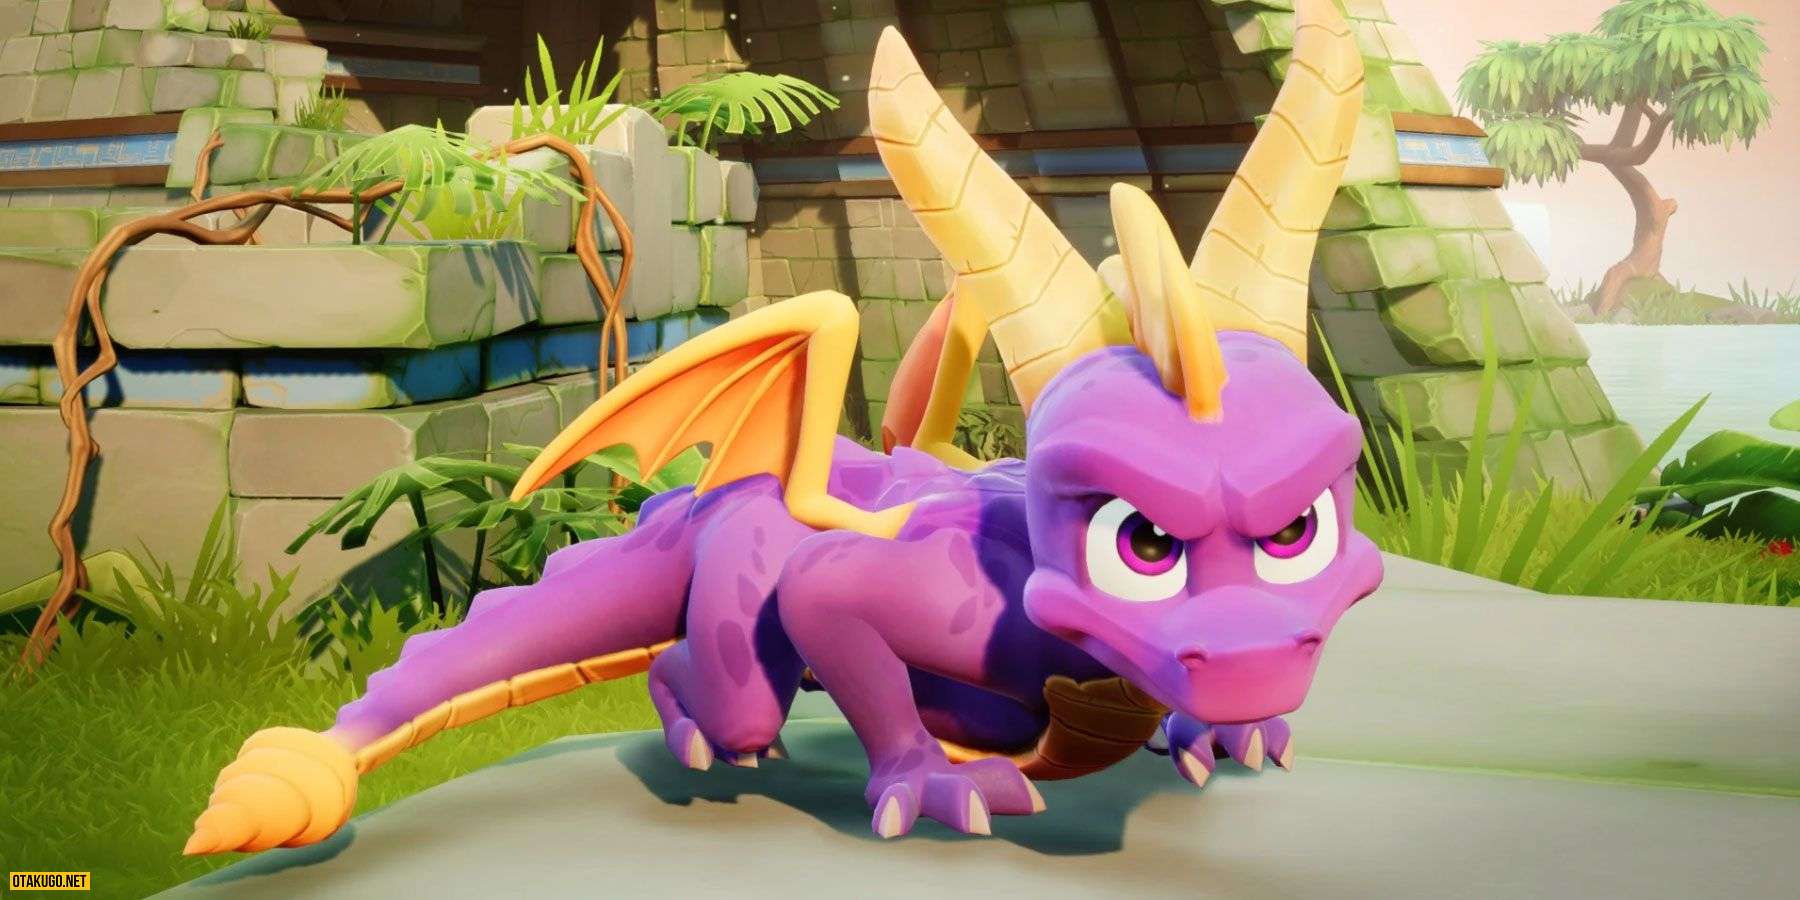 Spyro the Dragon Dev treu choc tiem nang tro lai